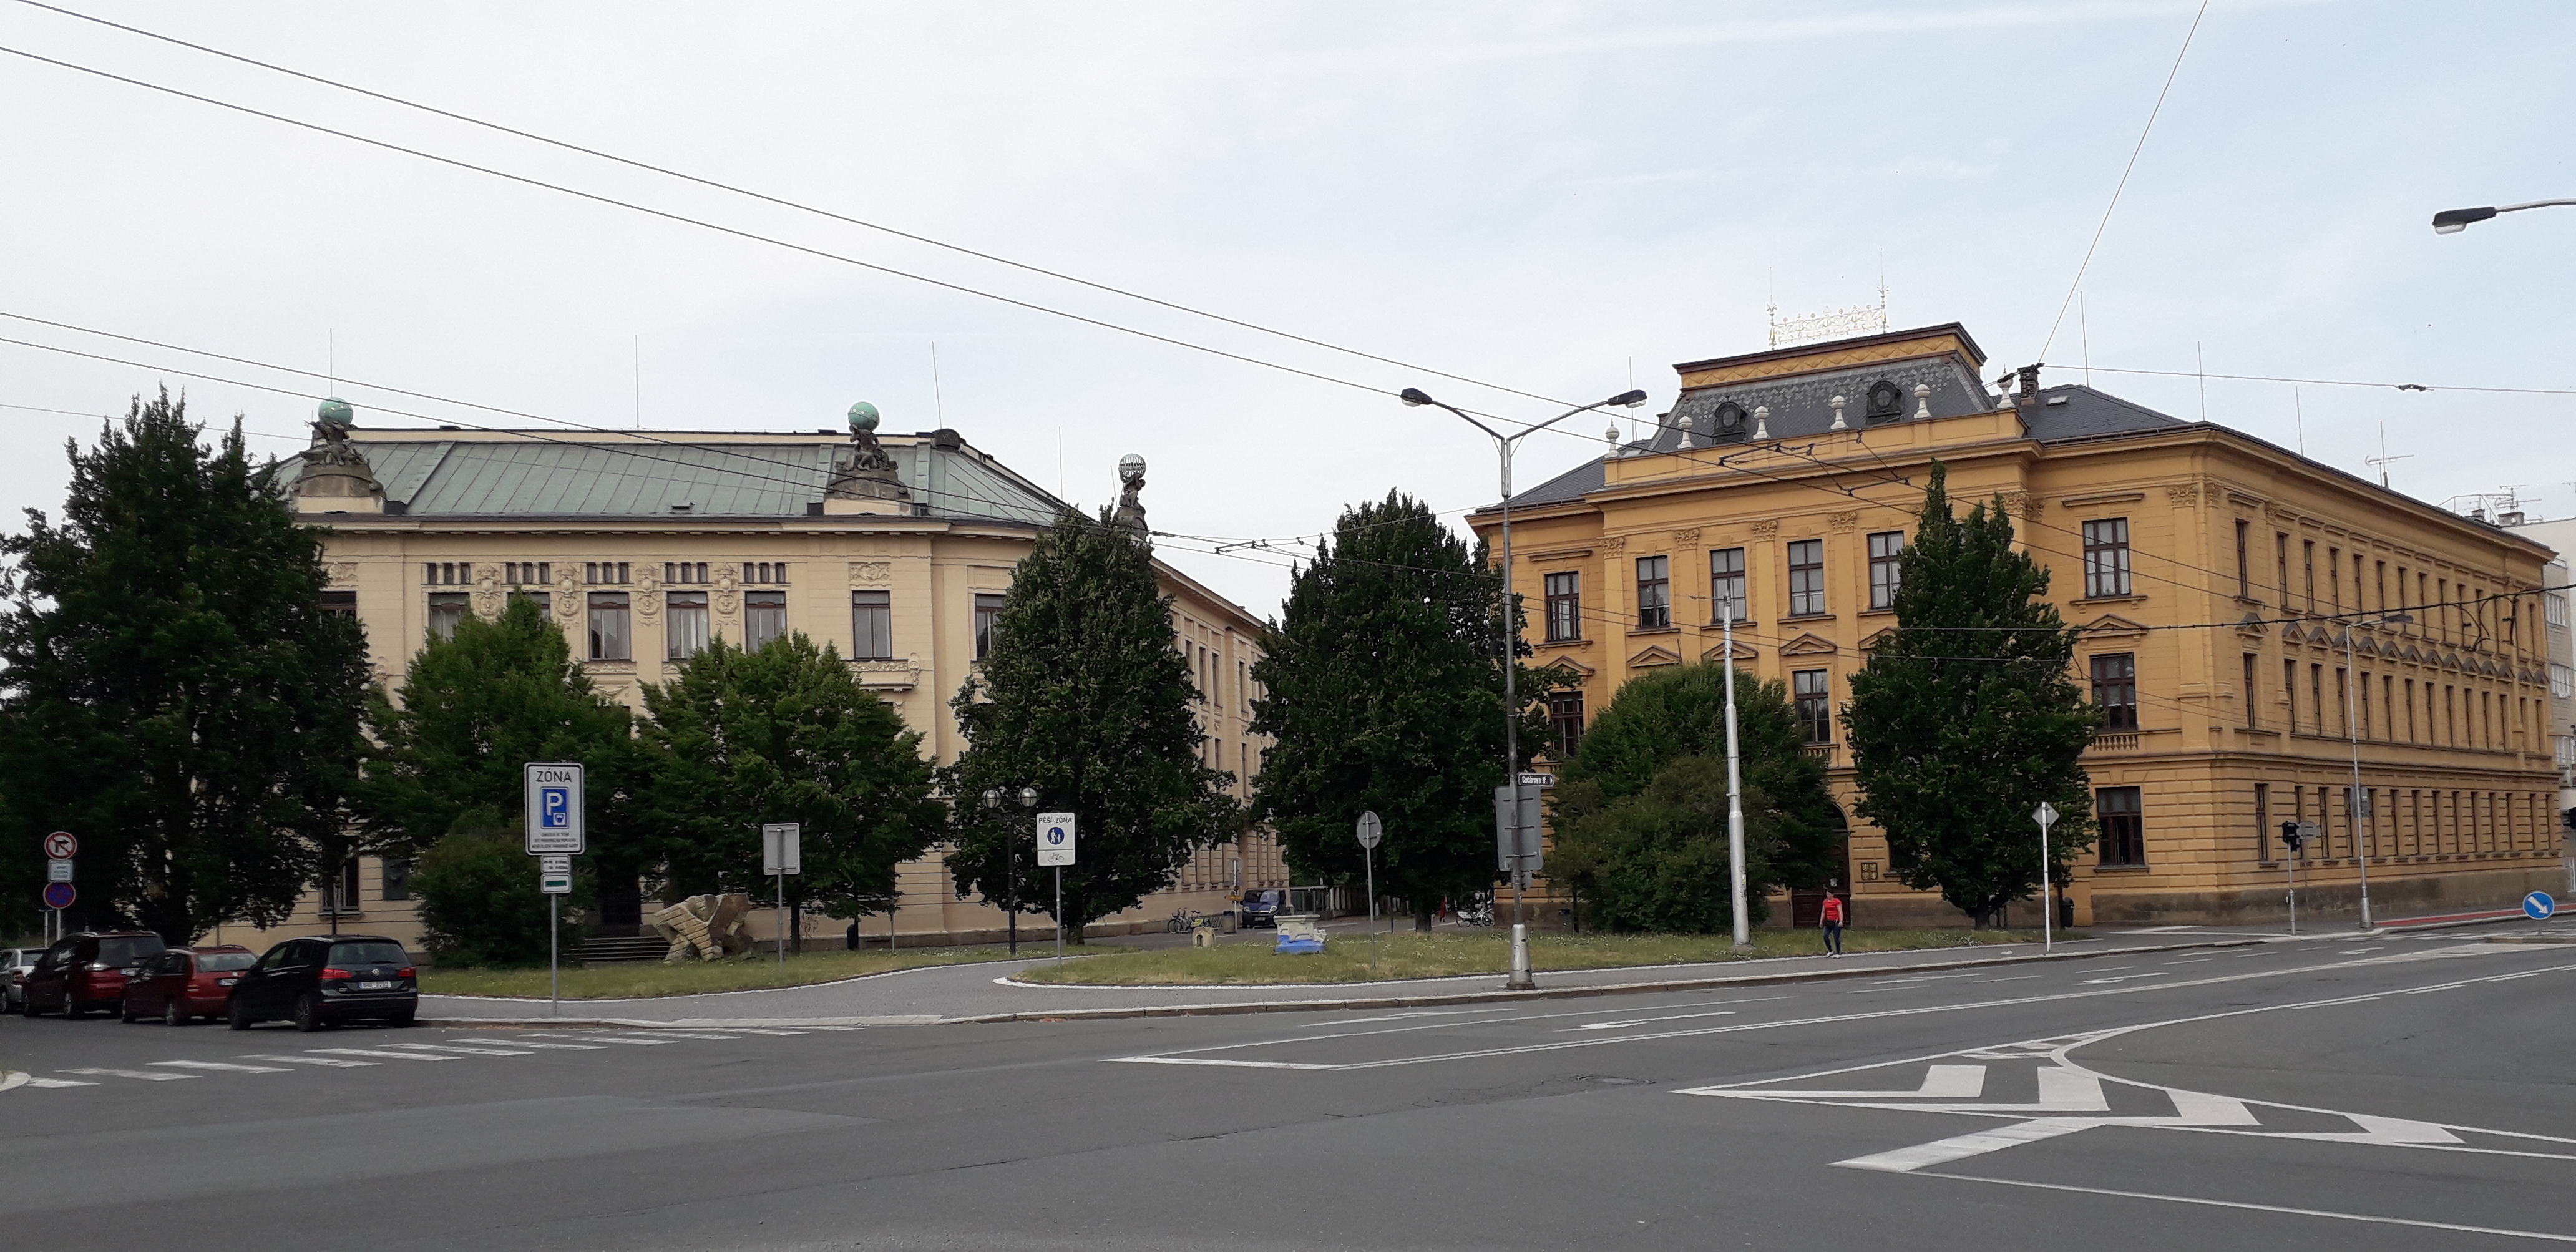 Hradec Králové University